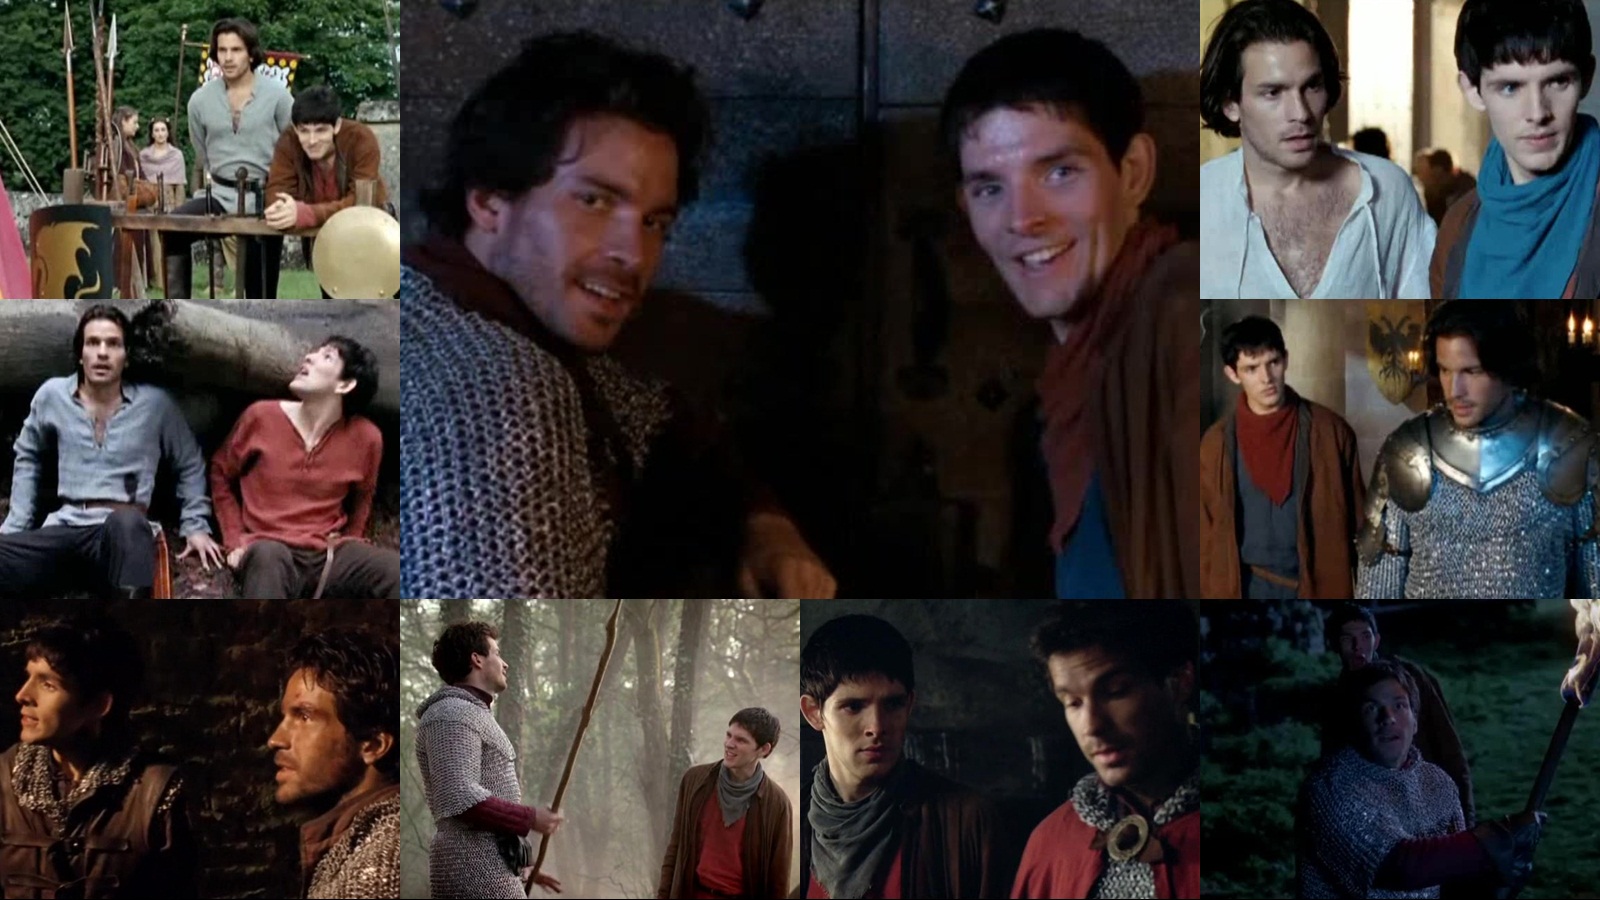 Merlin & Lancelot 1 Wallpaper - Merlin And Lancelot Friendship - HD Wallpaper 